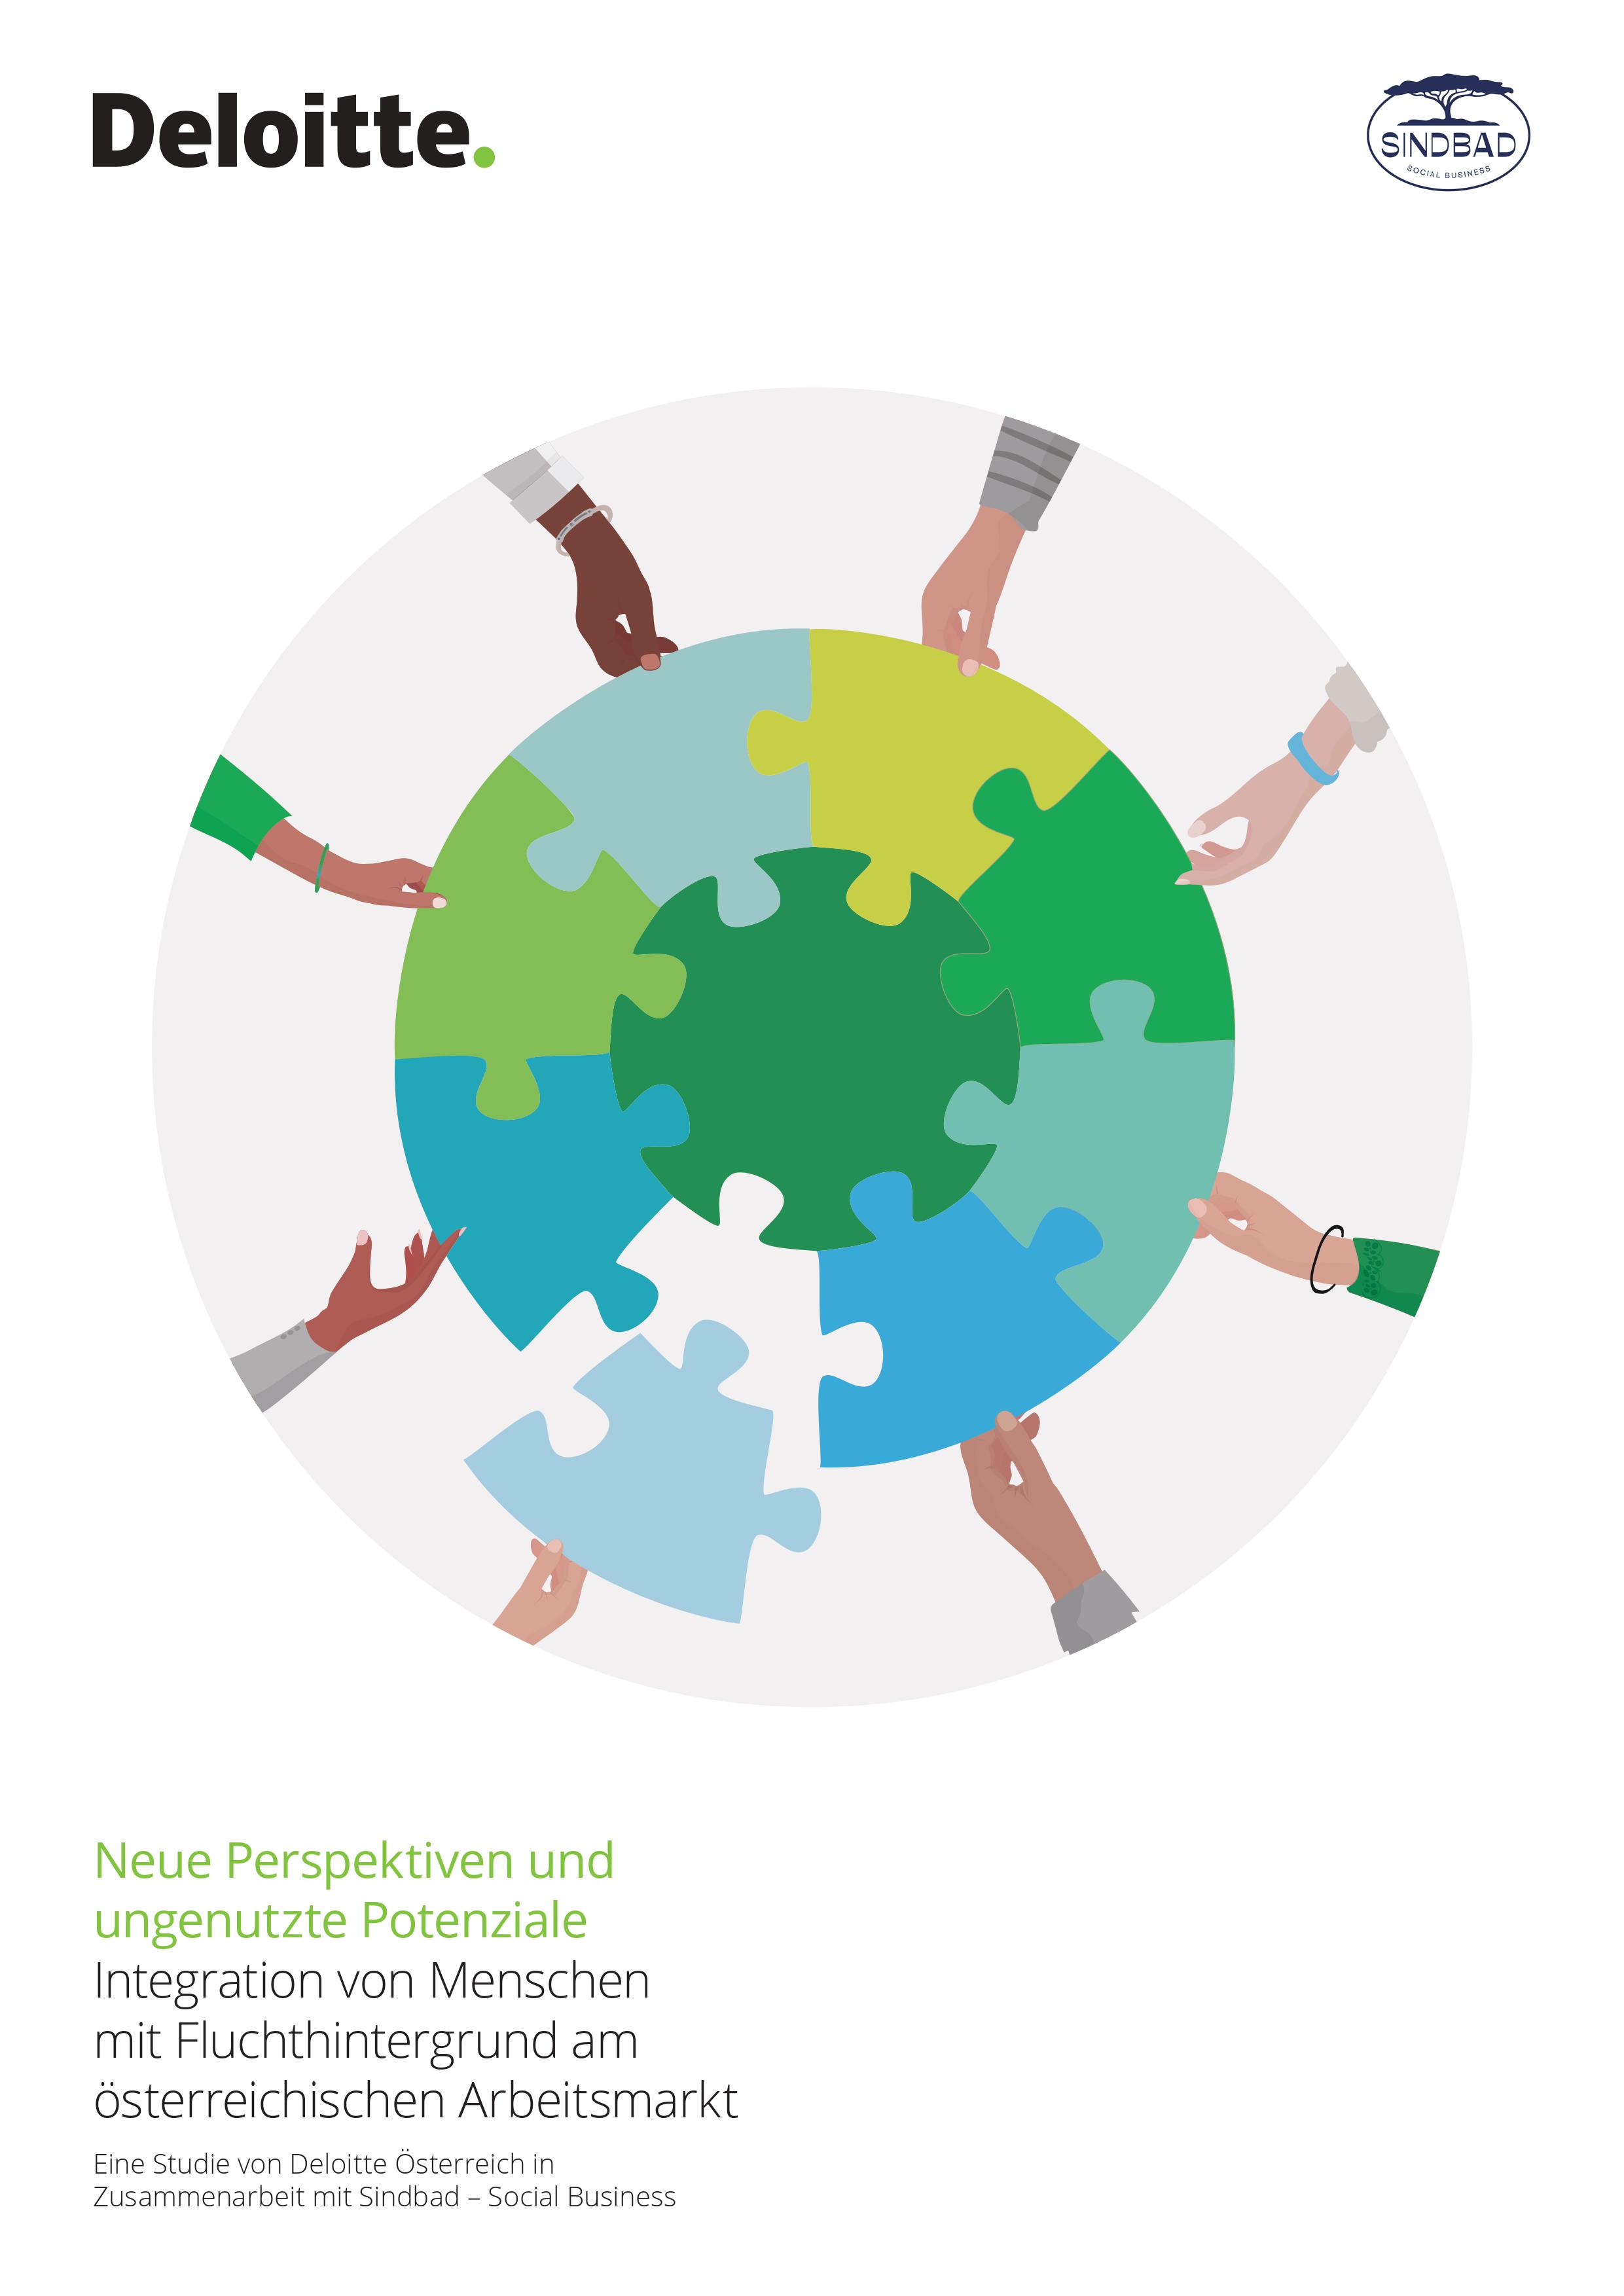 Titelbild der Deloitte Studie "Integration von Menschen mit Fluchthintergrund am österreichischen Arbeitsmarkt"